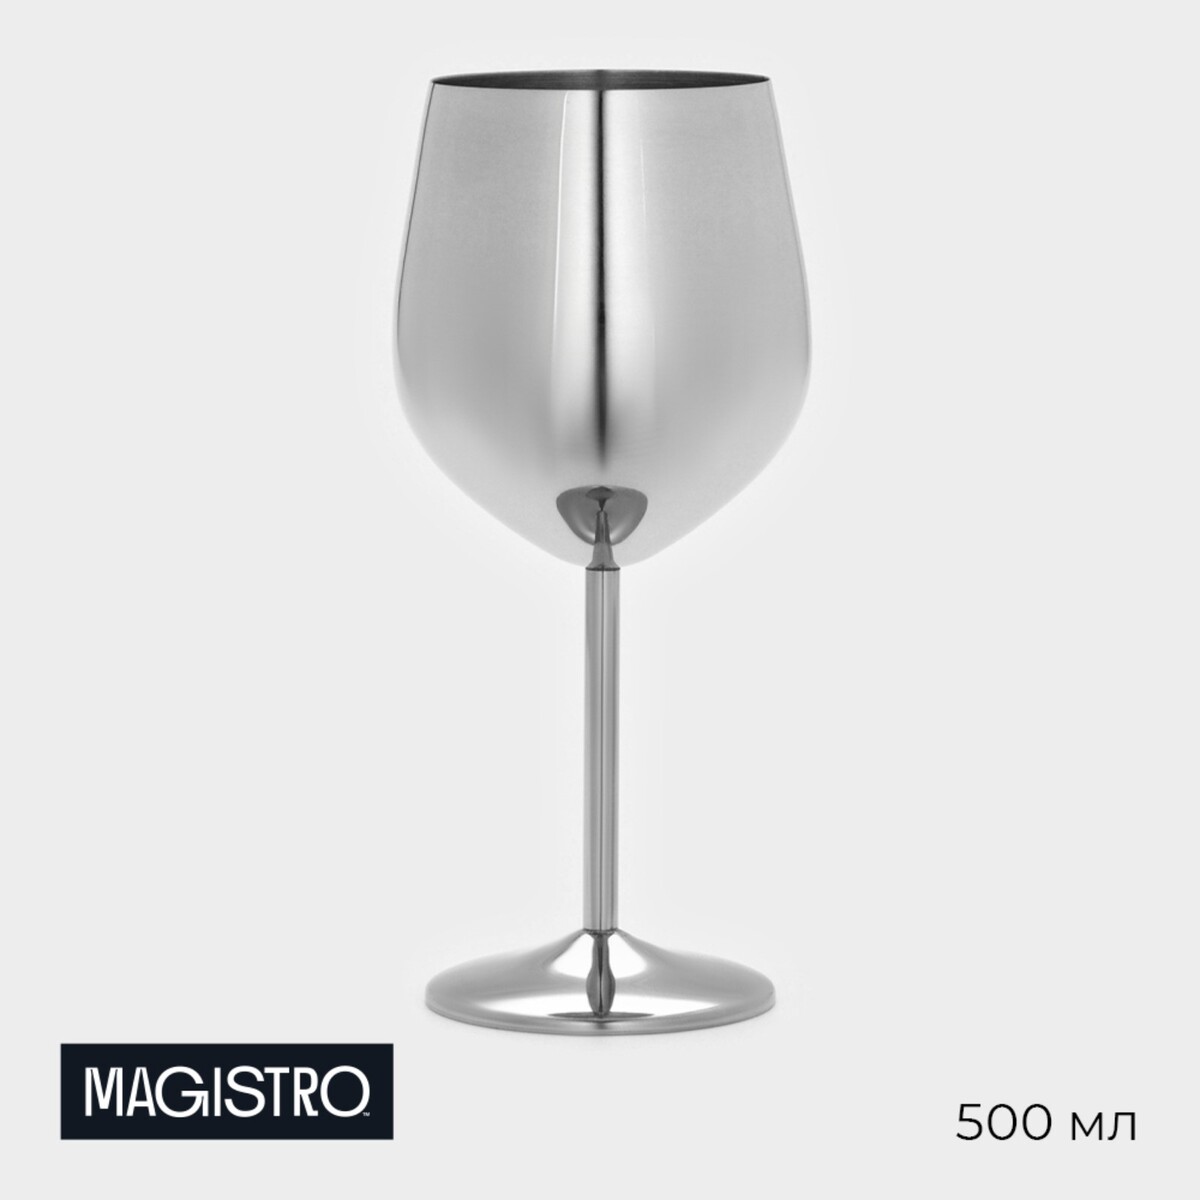 Бокал винный из нержавеющей стали magistro, 500 мл, 21×9,5 см, для коктейлей, глянцевый, цвет серебряный бокал для вина 350 мл стекло 6 шт glasstar васильковый 9 rnvs 1819 9